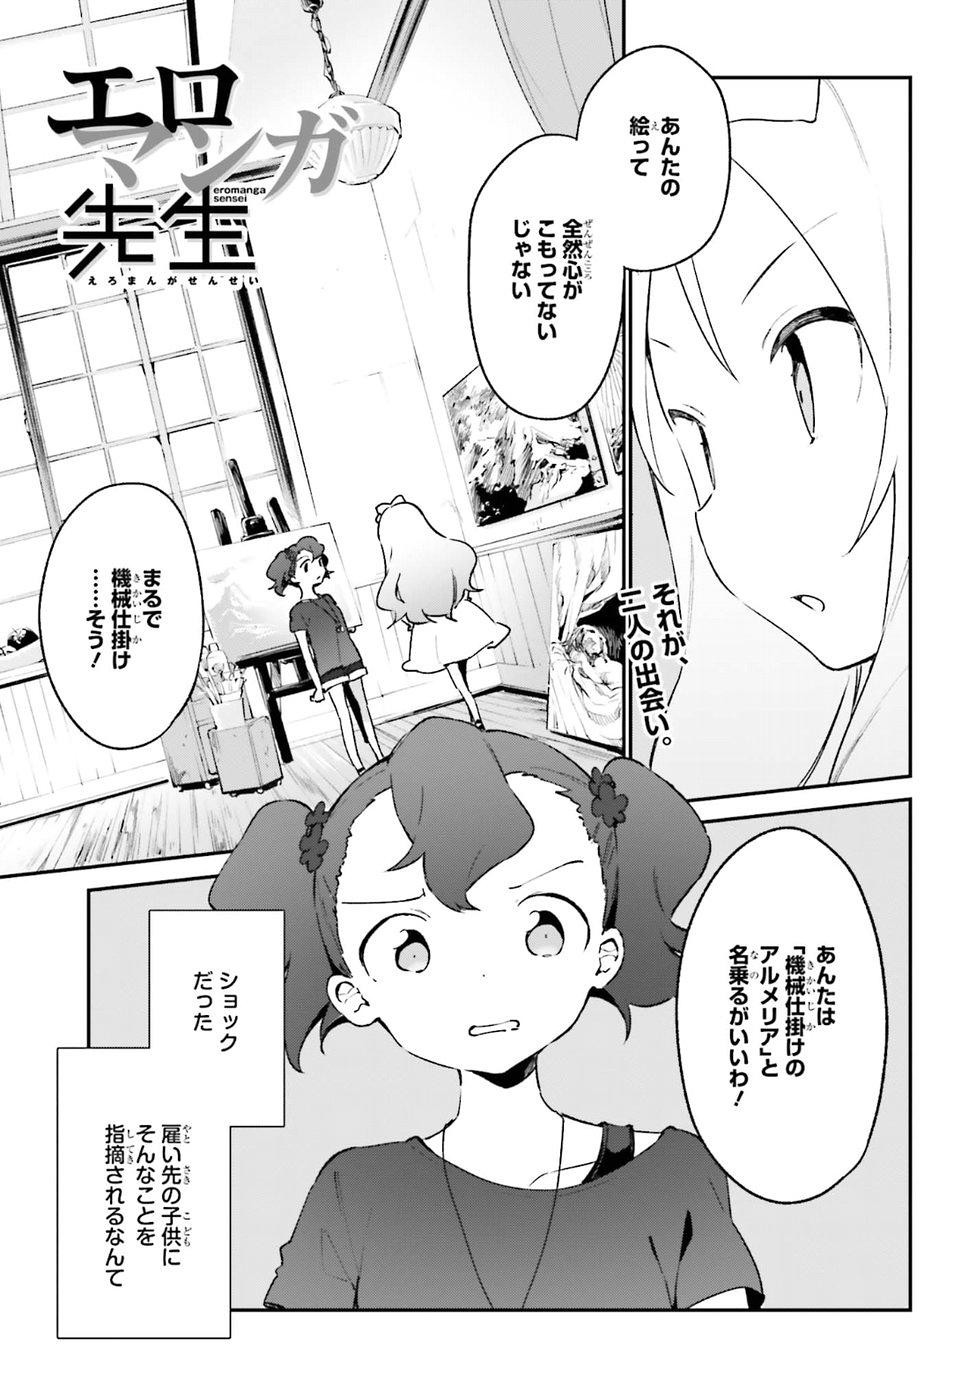 Ero Manga Sensei - Chapter 47 - Page 2